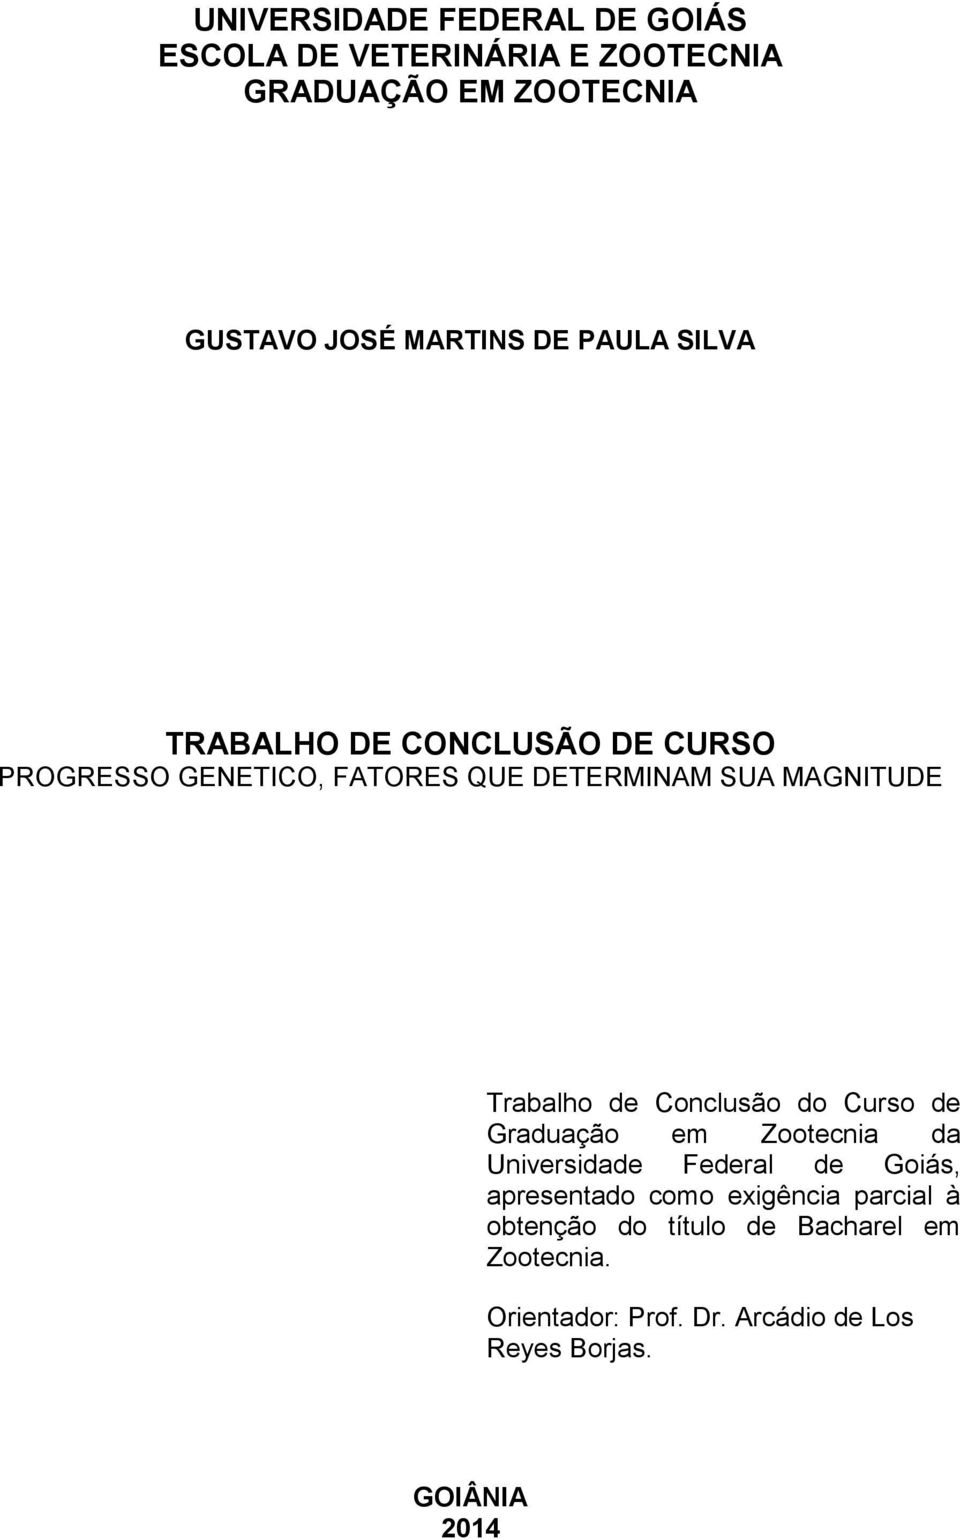 Conclusão do Curso de Graduação em Zootecnia da Universidade Federal de Goiás, apresentado como exigência